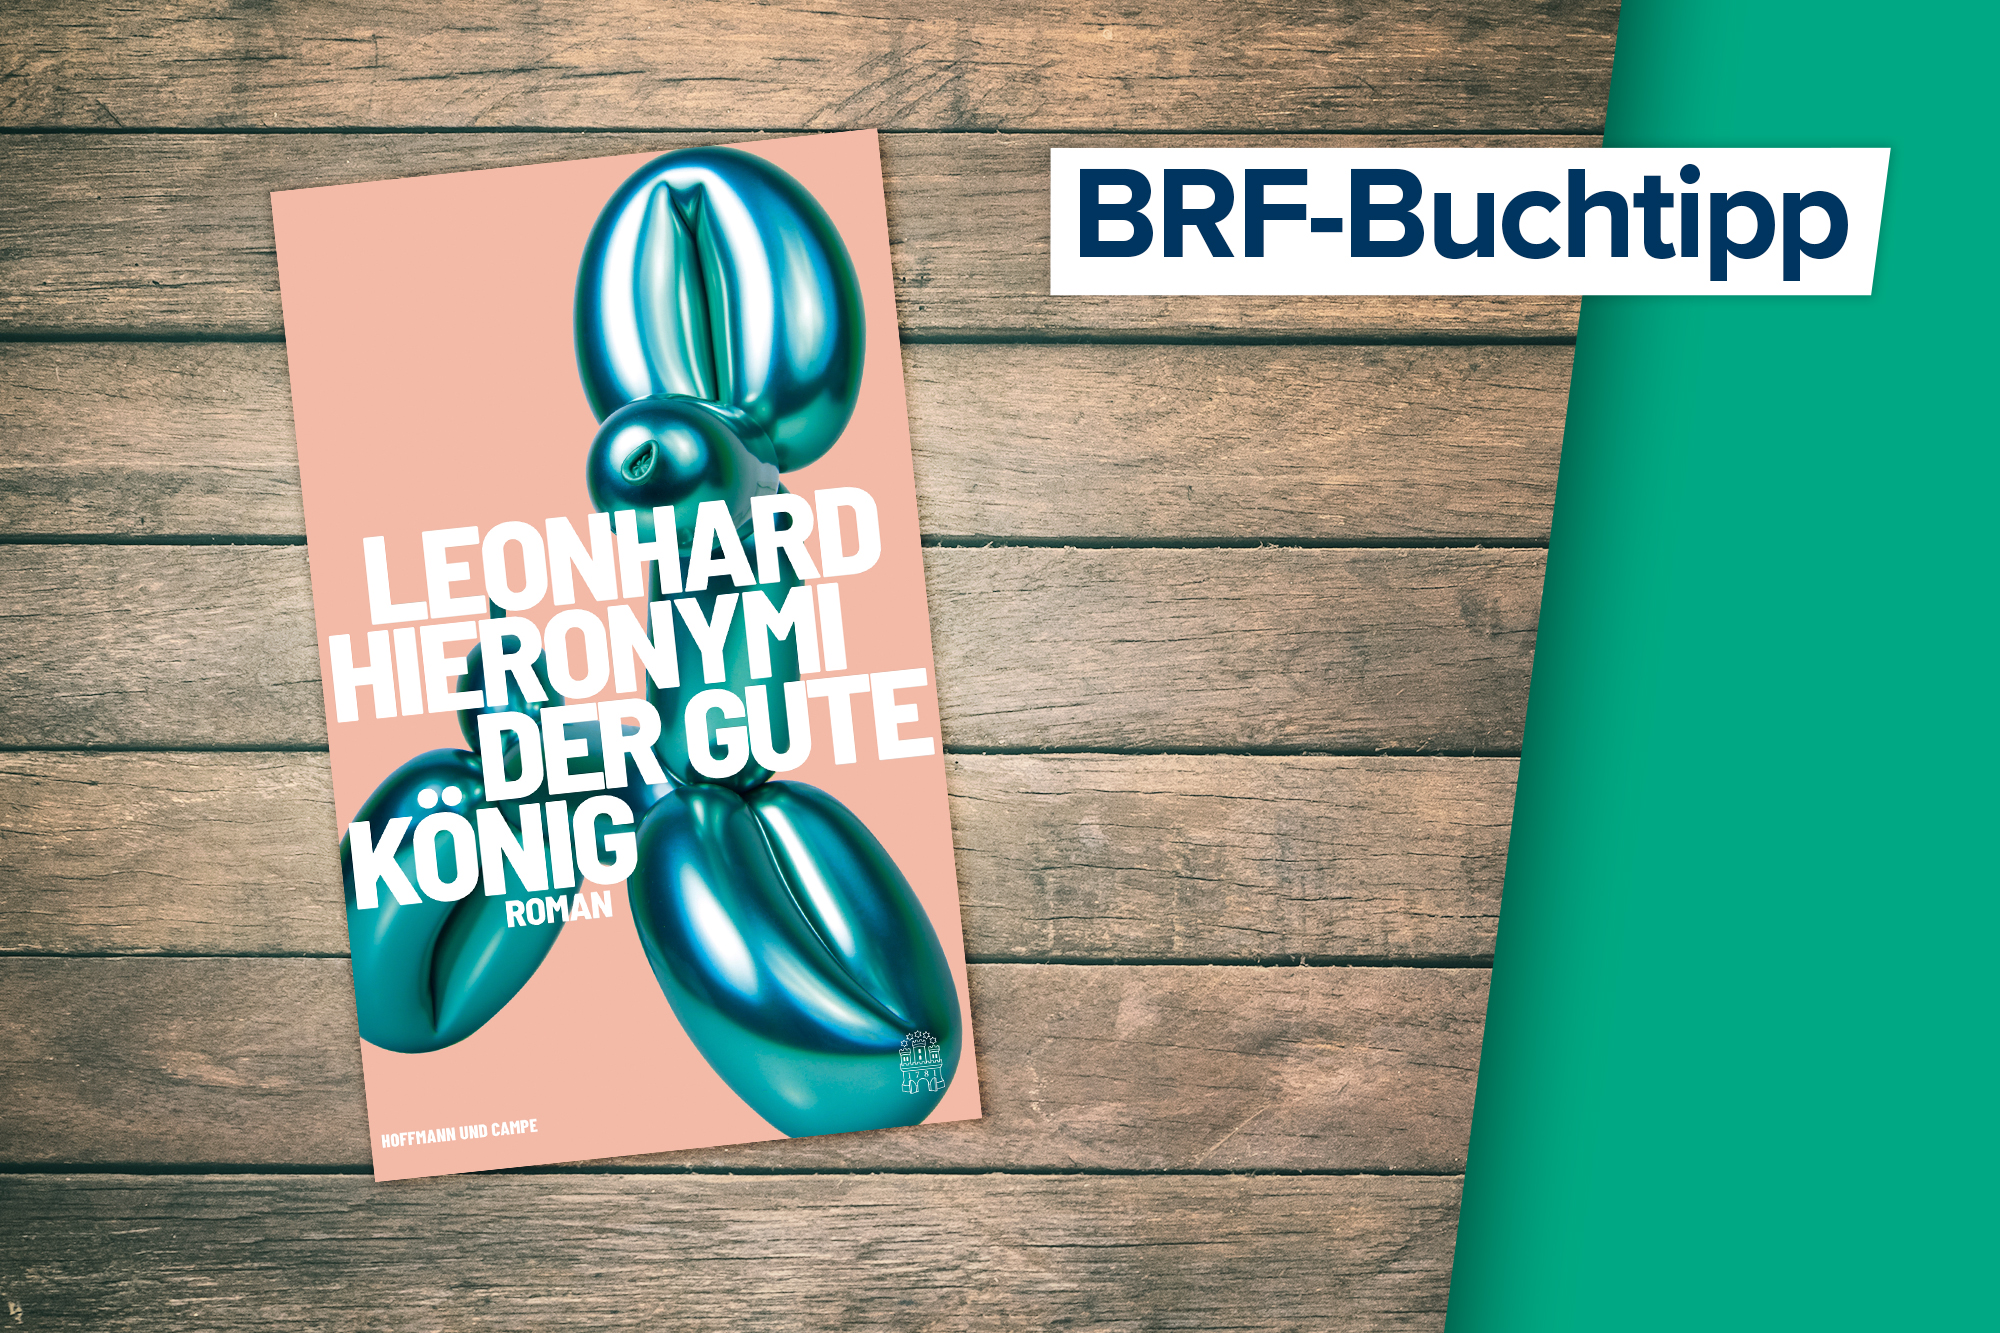 Buchtipp der Woche: Der gute König von Leonhard Hieronymi (Cover: Hoffmann und Campe)